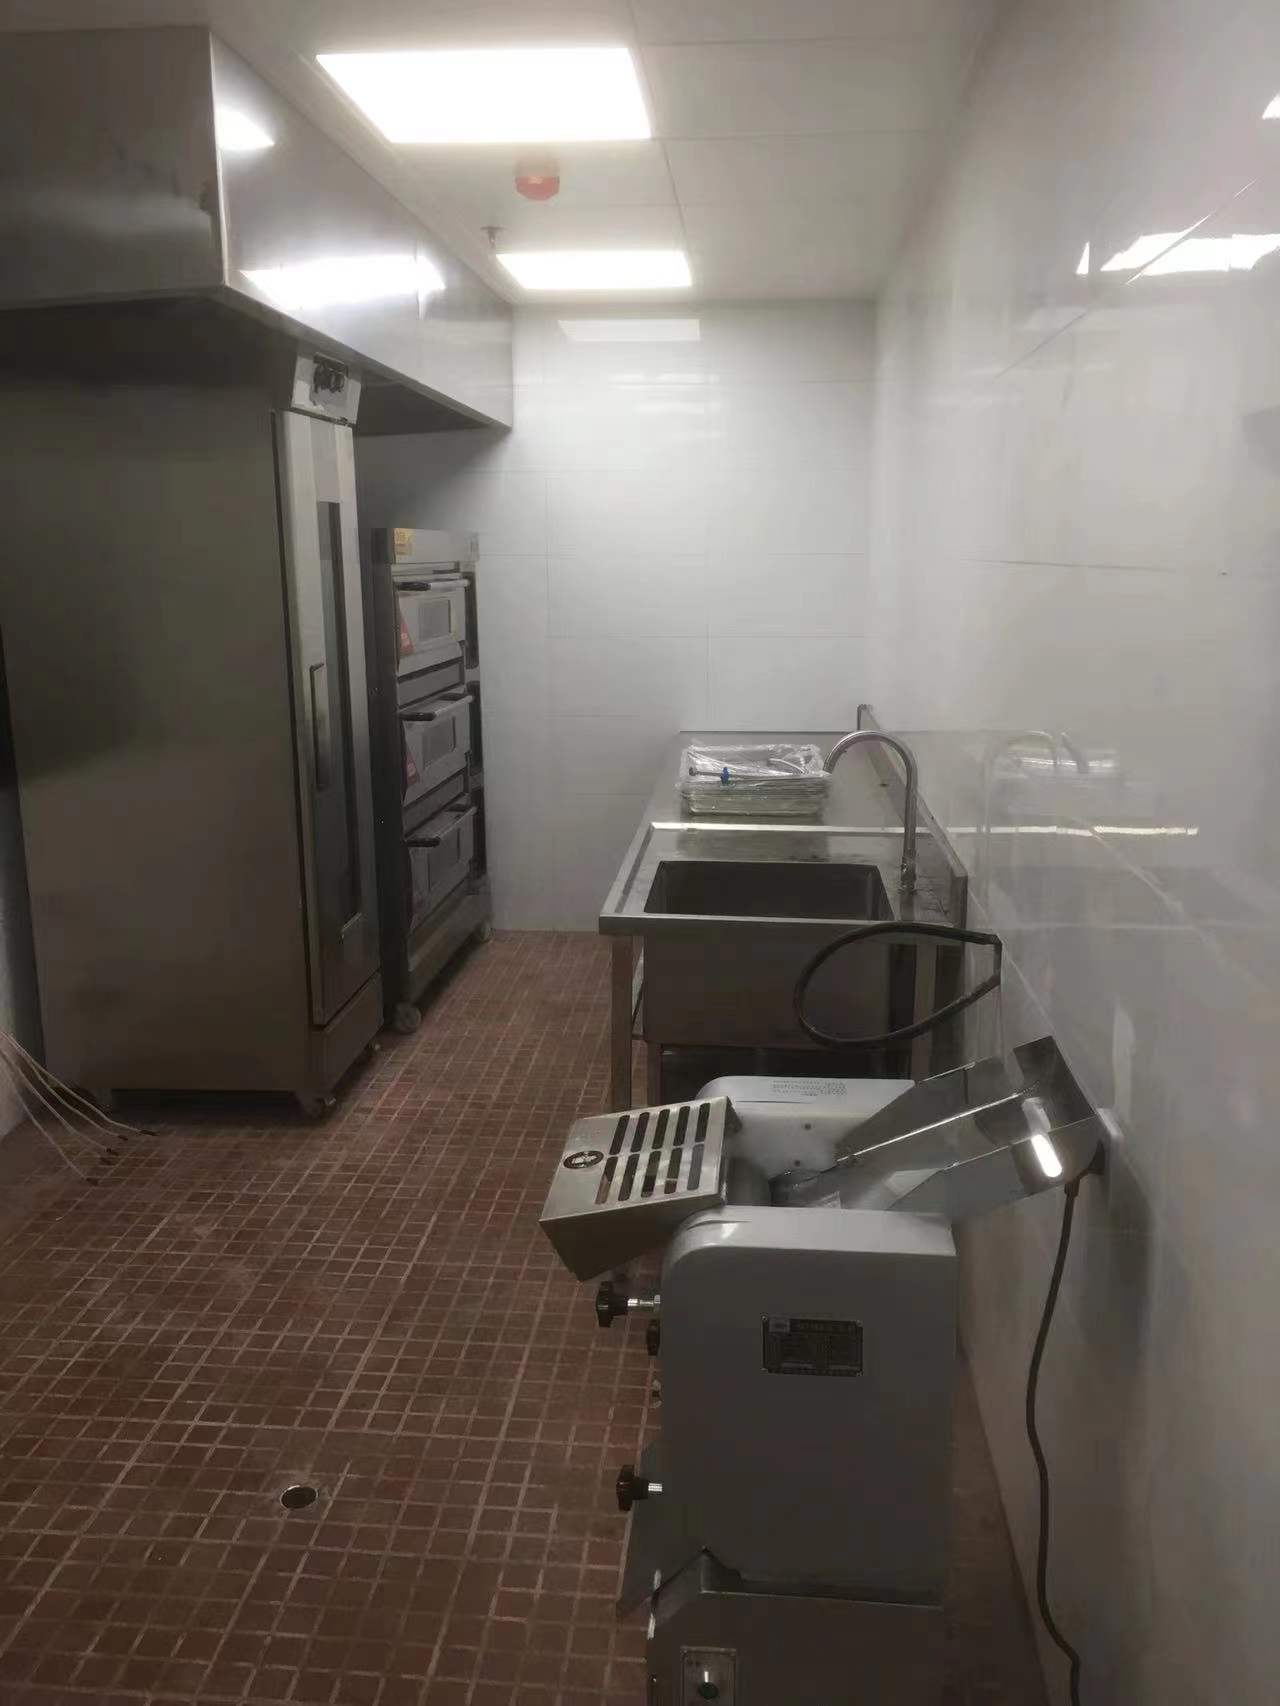 1200人小学食堂厨房工程购置厨房设备都有哪些要求？